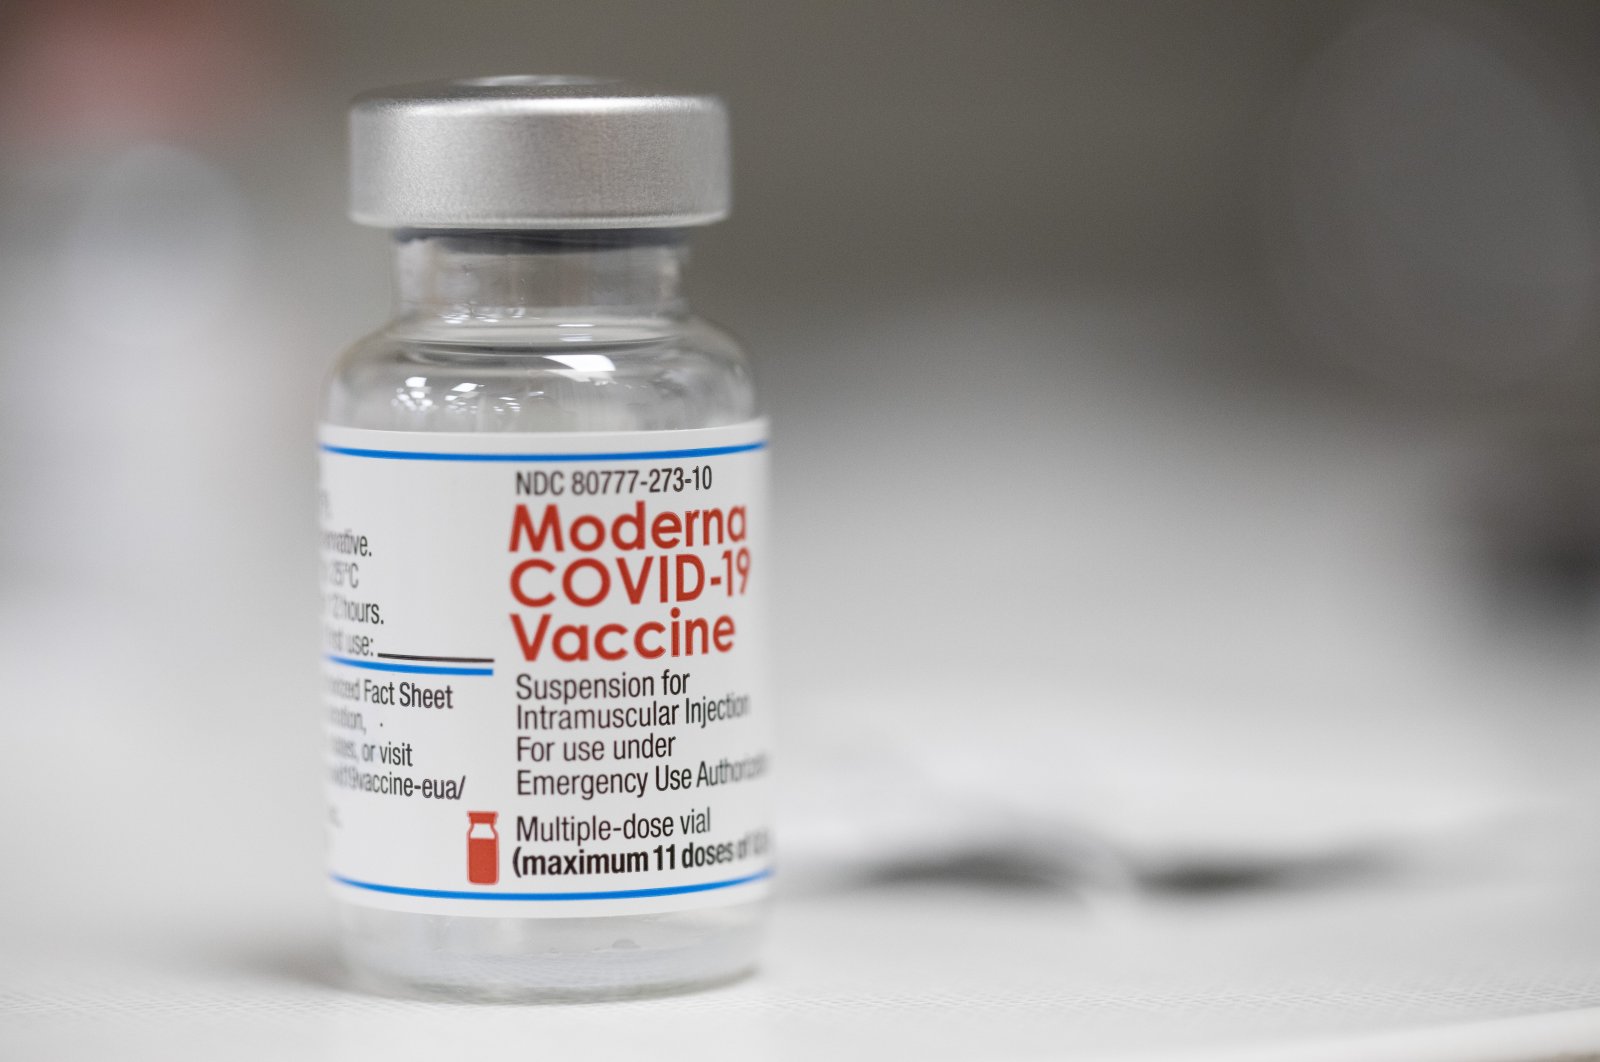 Kanada mengizinkan vaksin Moderna untuk anak-anak berusia 5 tahun ke bawah